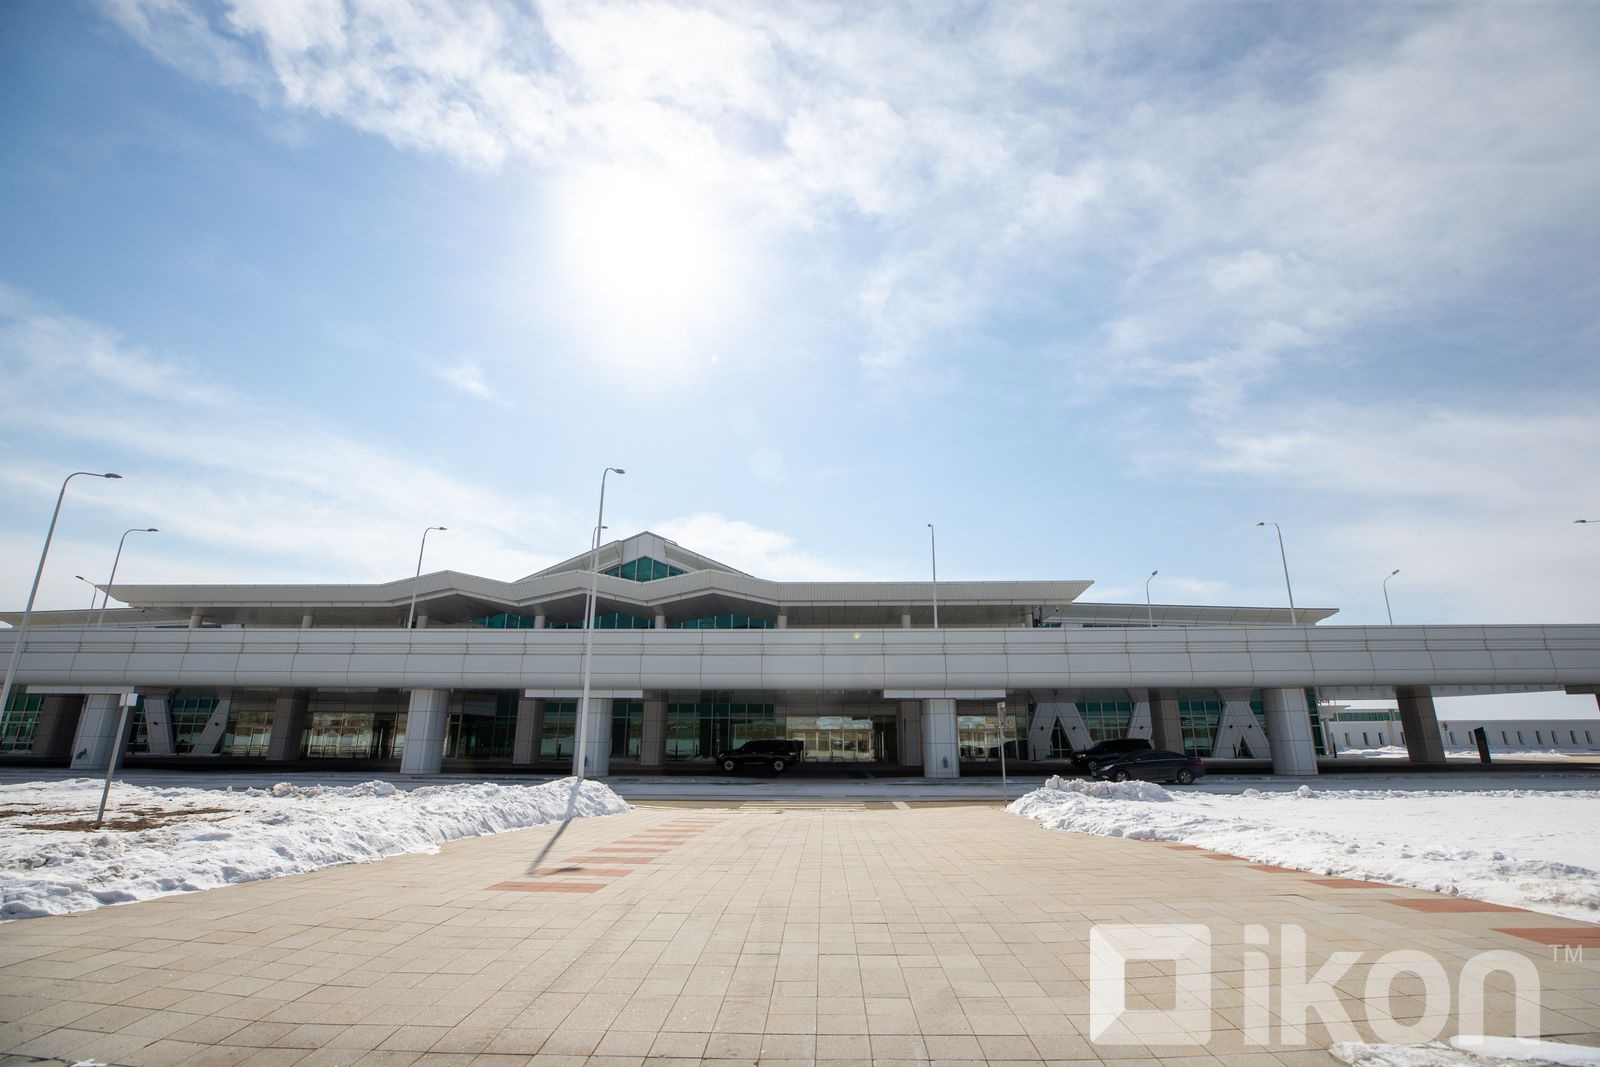 새 공항은 7월 1일부터 운영할 것.jpg